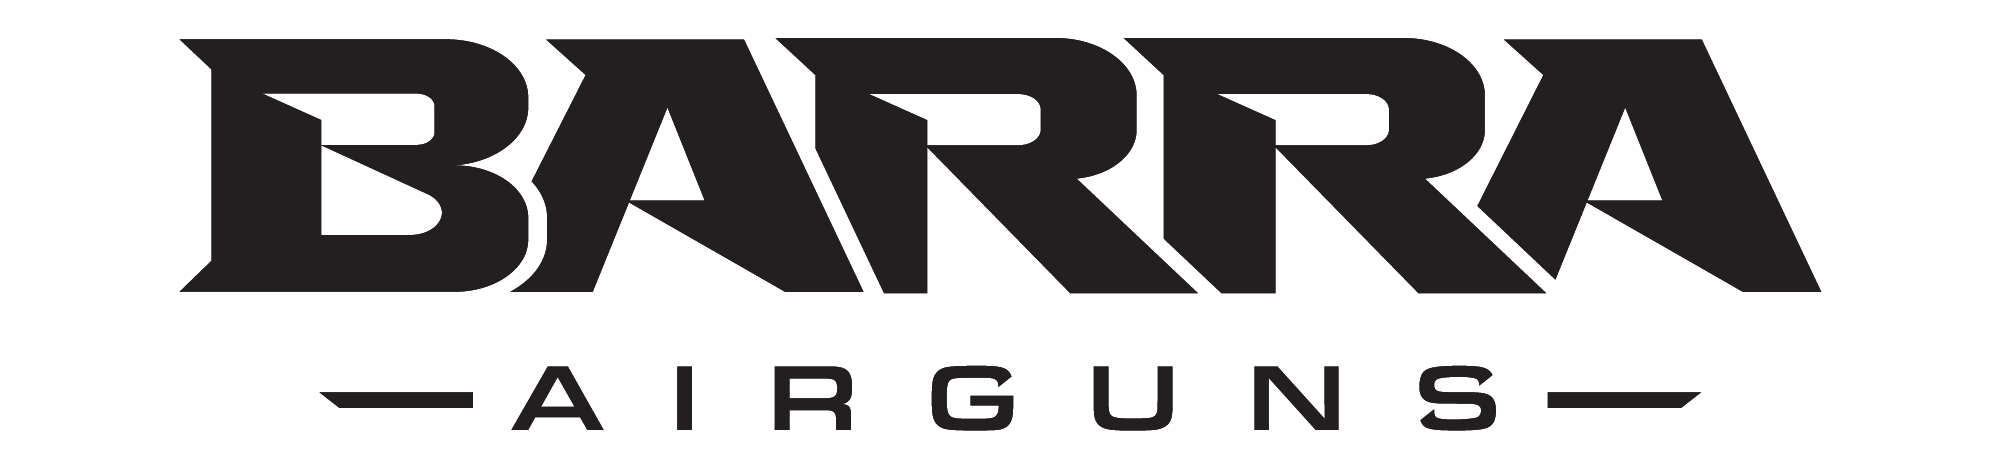 Barra-logo